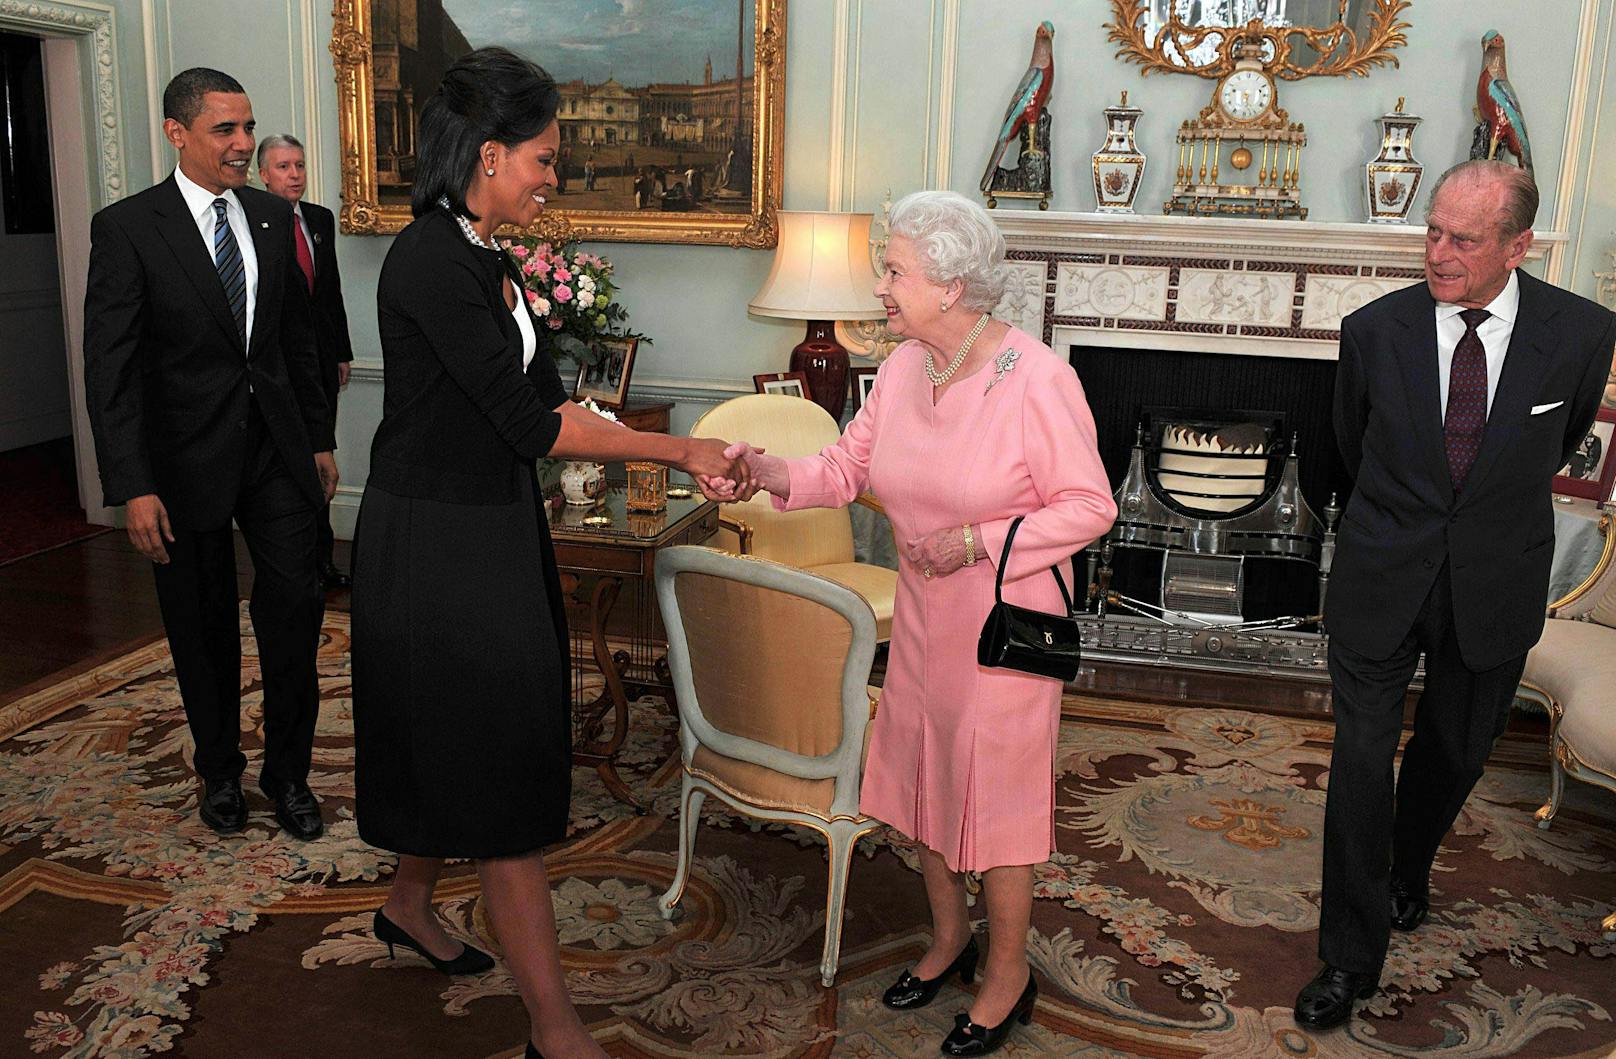 <strong>Michelle Obama</strong> freute sich 2009 anscheinend so sehr über ihren Besuch im Buckingham Palace, dass sie <strong>Queen Elizabeth II.</strong> bei der Begrüßung an sich zog und umarmte. So viel Herzlichkeit ist normalerweise am steifen britischen Königshof nicht erwünscht.